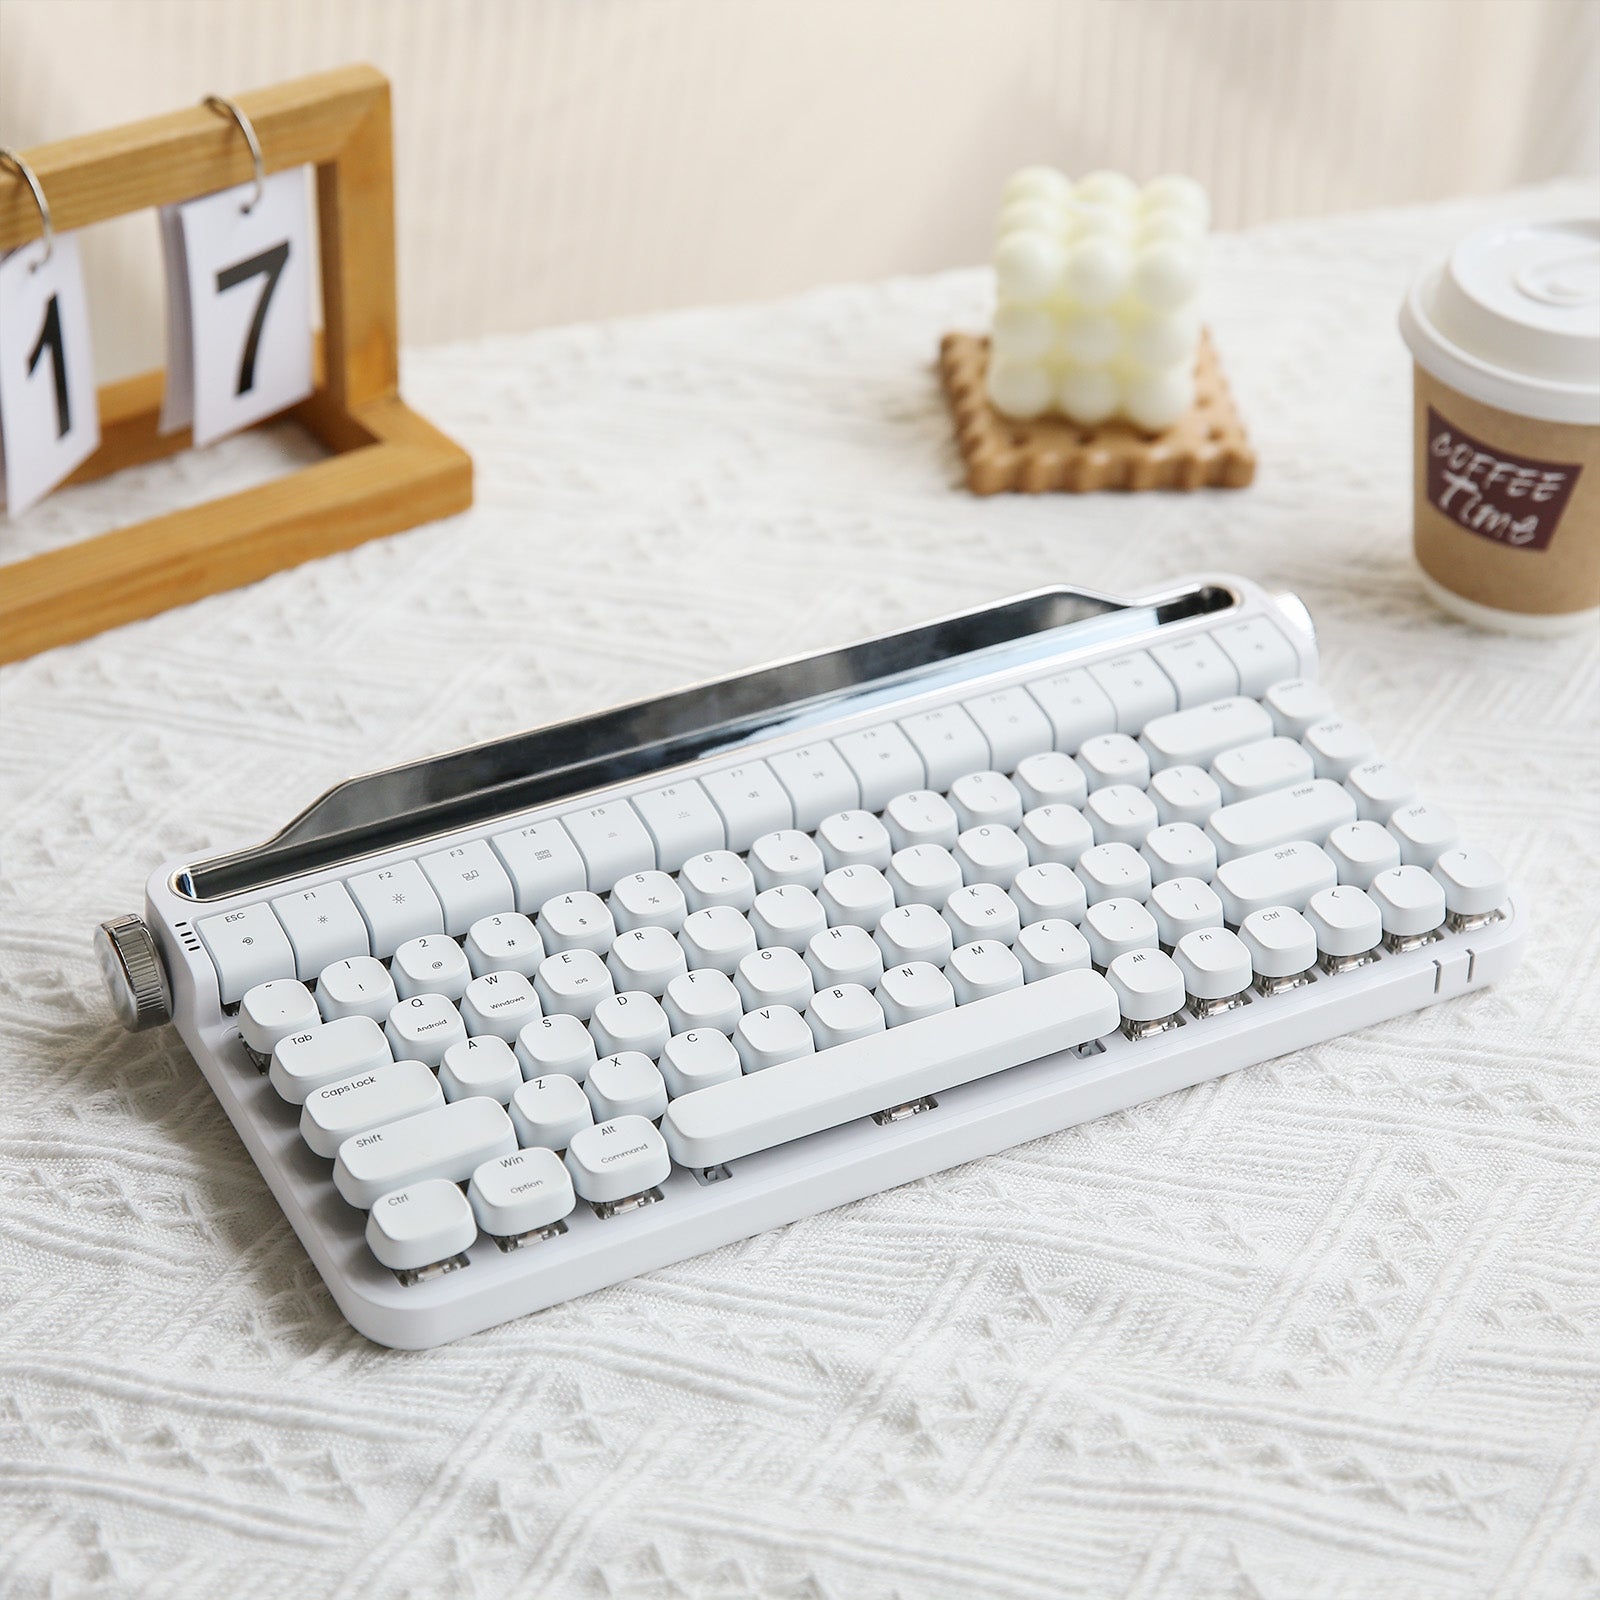 YUNZII ACTTO B703 Retro Typewriter Mechanical Keyboard